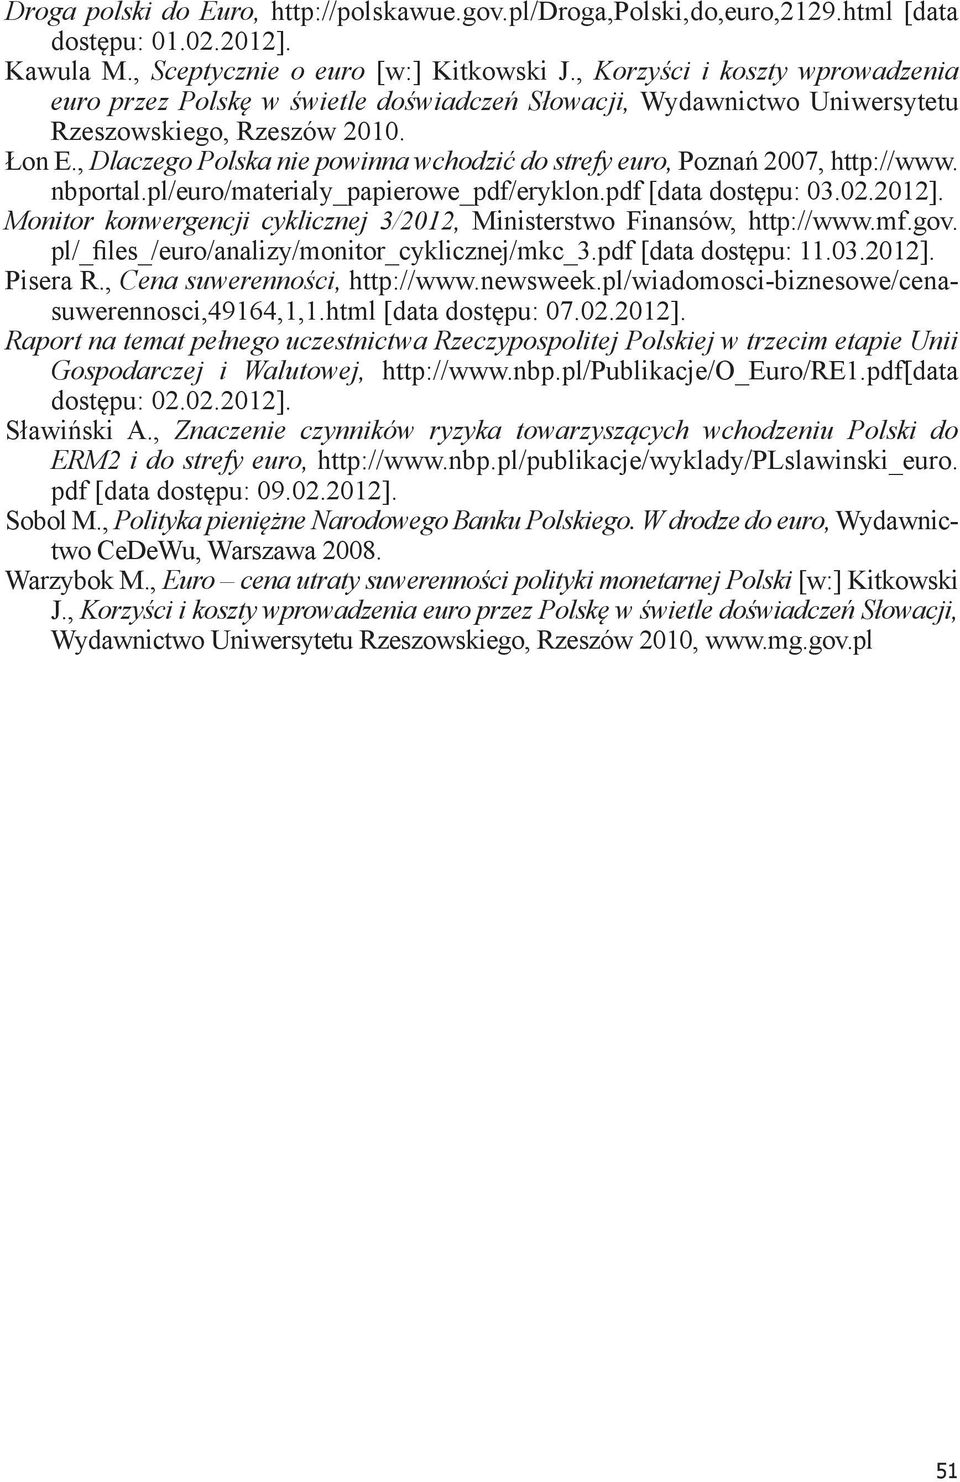 , Dlaczego Polska nie powinna wchodzić do strefy euro, Poznań 2007, http://www. nbportal.pl/euro/materialy_papierowe_pdf/eryklon.pdf [data dostępu: 03.02.2012].